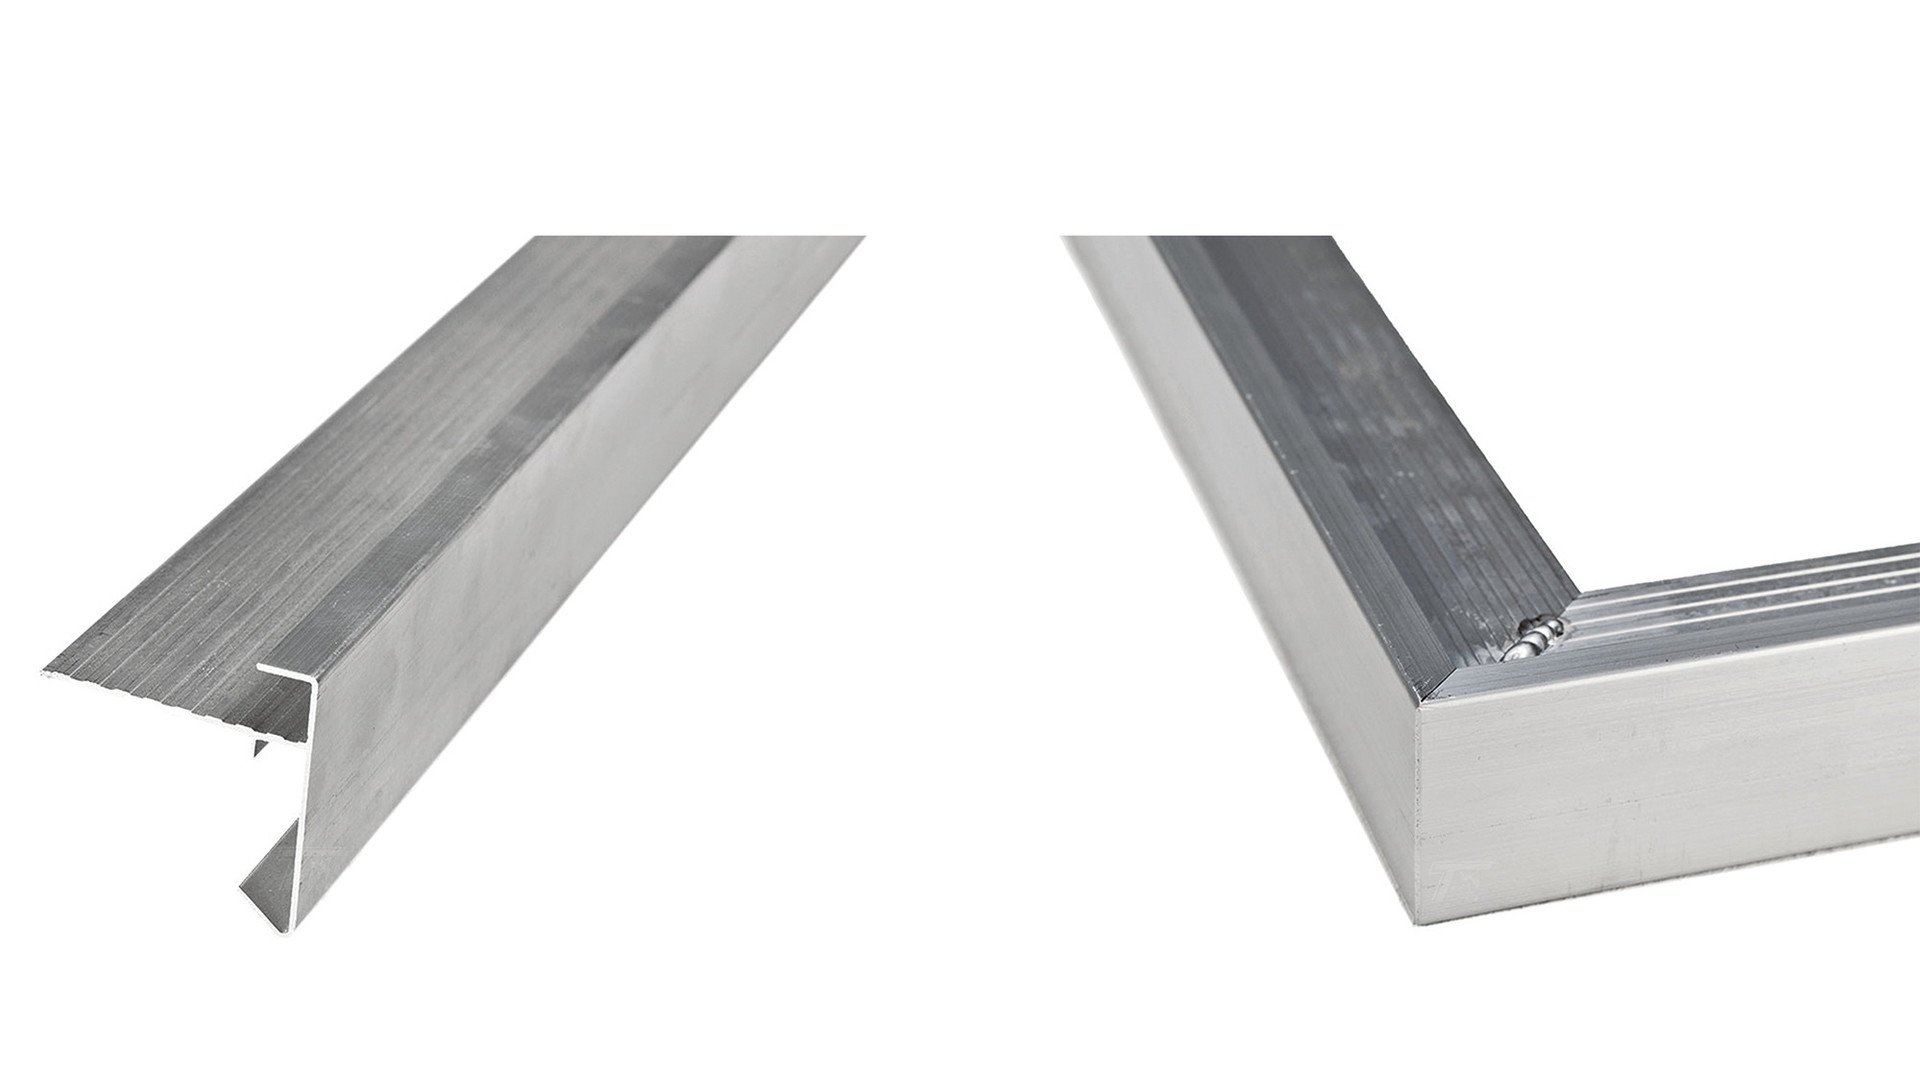 Daktrim aluminium 4.5x4.5 cm